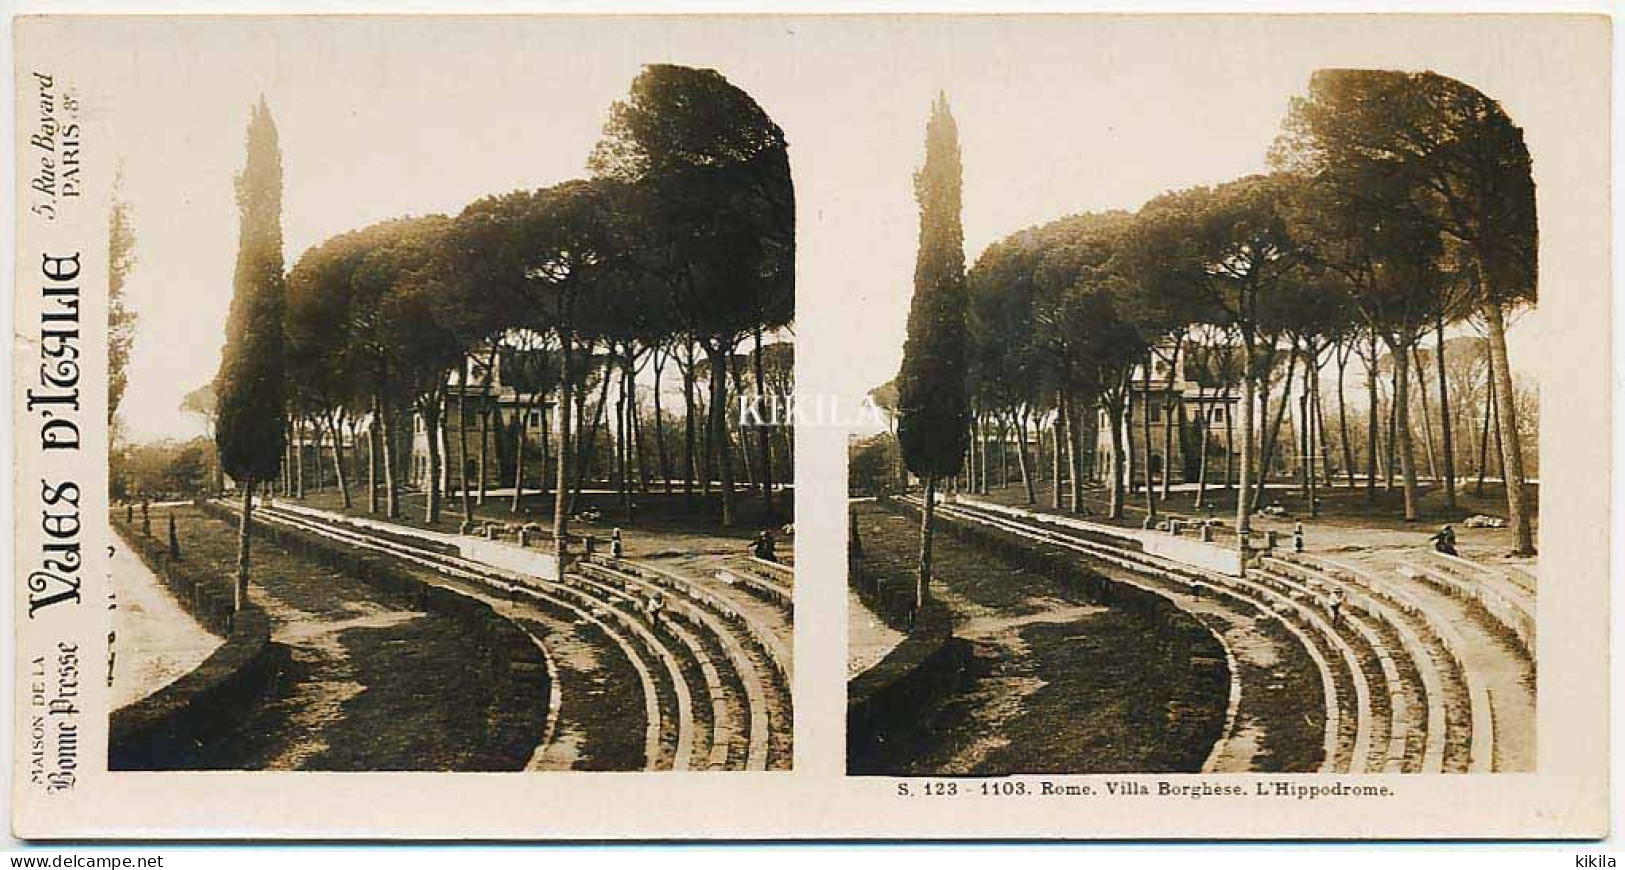 Photo Stéréoscopique 7,2x7,5cm Carte 17,2x8,9cm Vues D'Italie S. 123 - 1103 ROME. Villa Borghese. L'Hippodrome* - Photos Stéréoscopiques